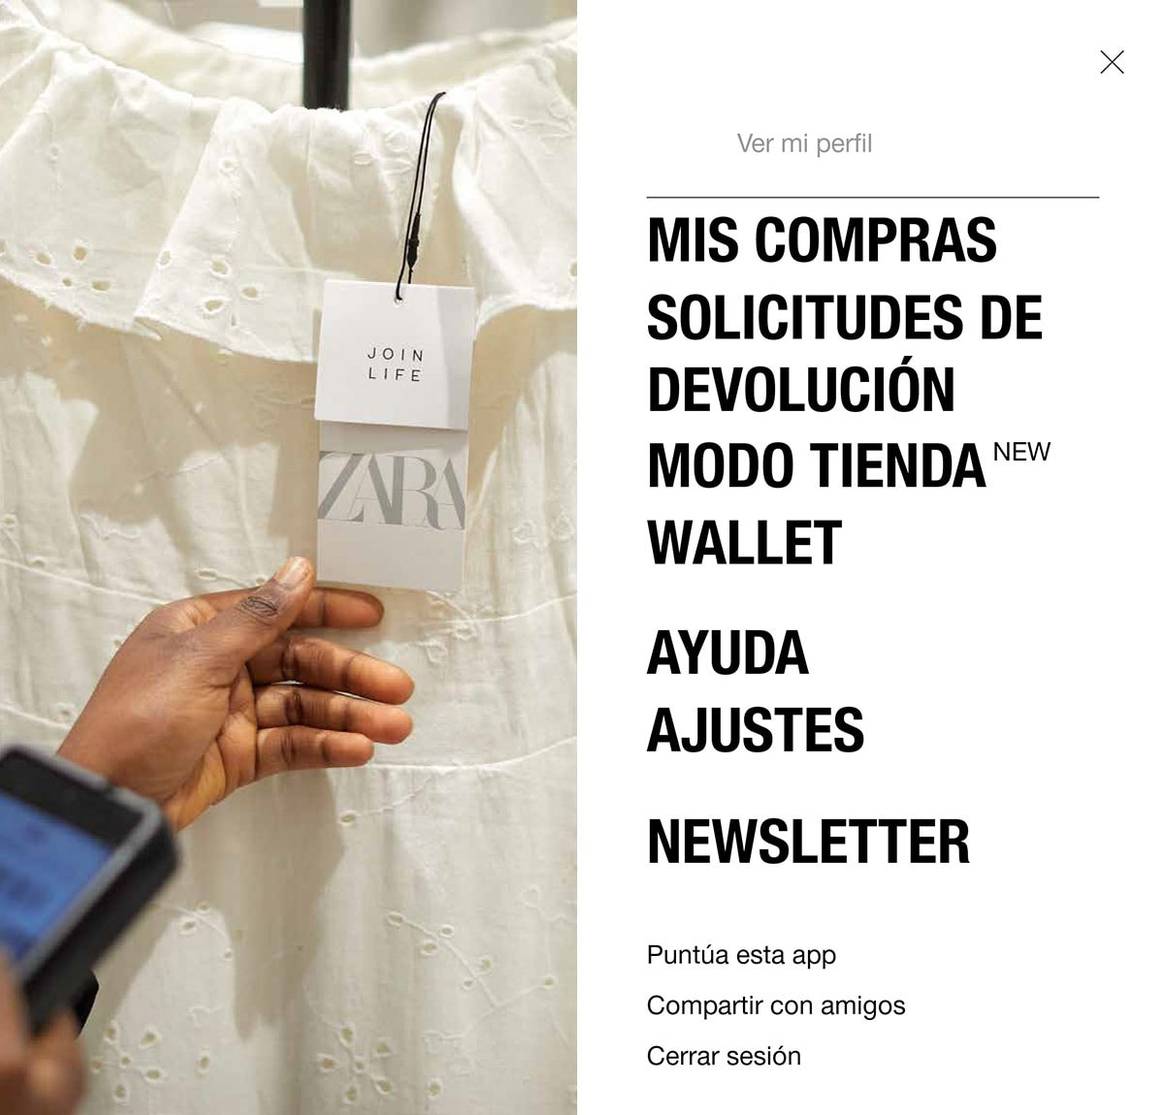 Así funciona el nuevo “Modo tienda” de Zara: desde reservar probadores a localizar prendas